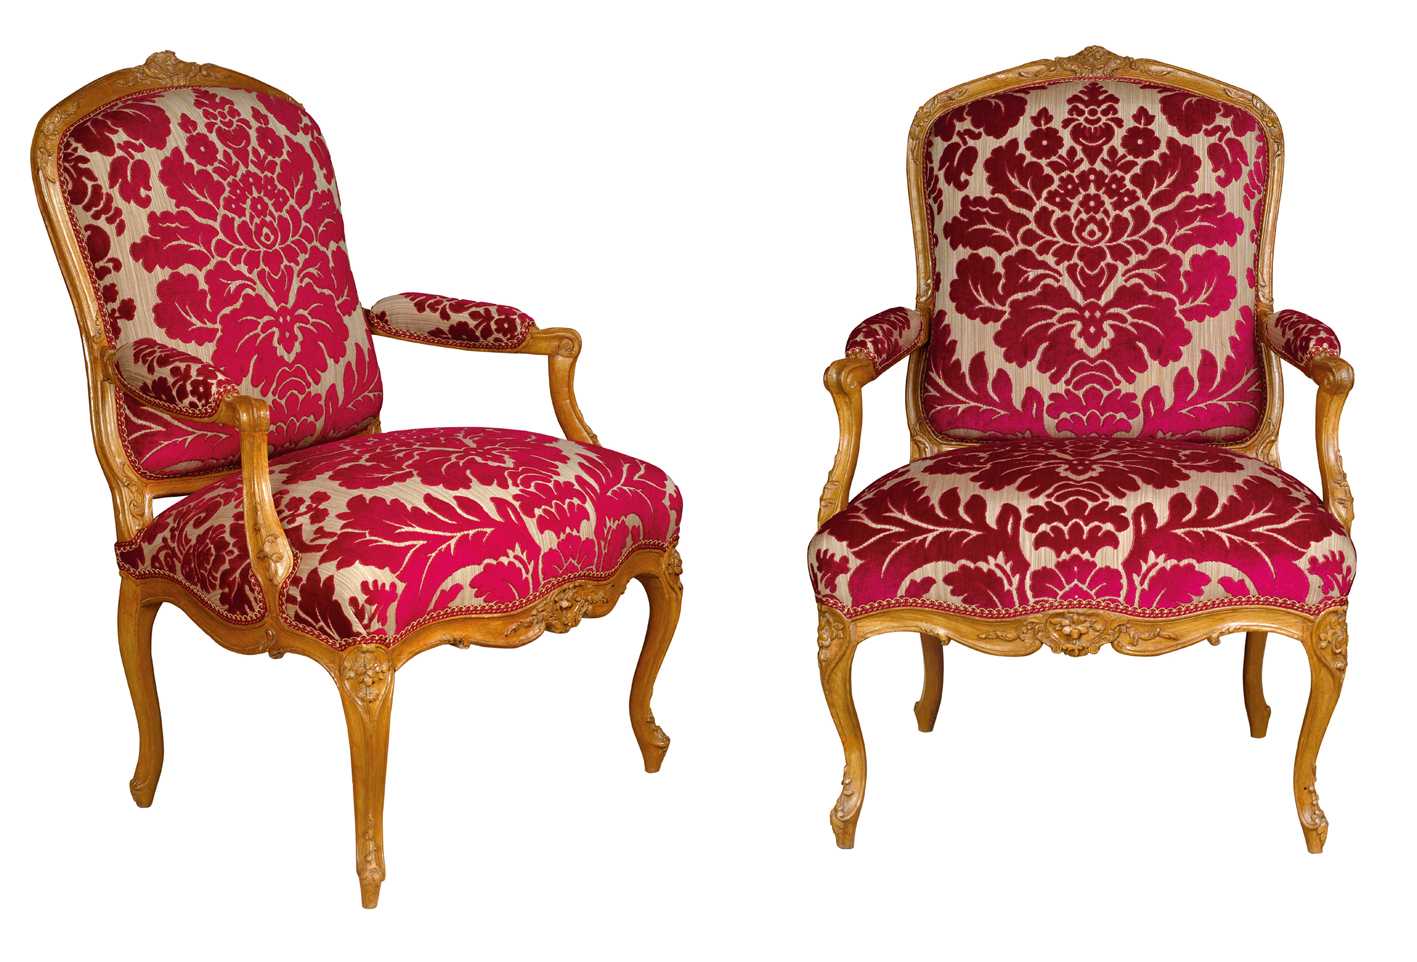 pair of fauteuils à la reine by Jean-Baptiste Gourdin